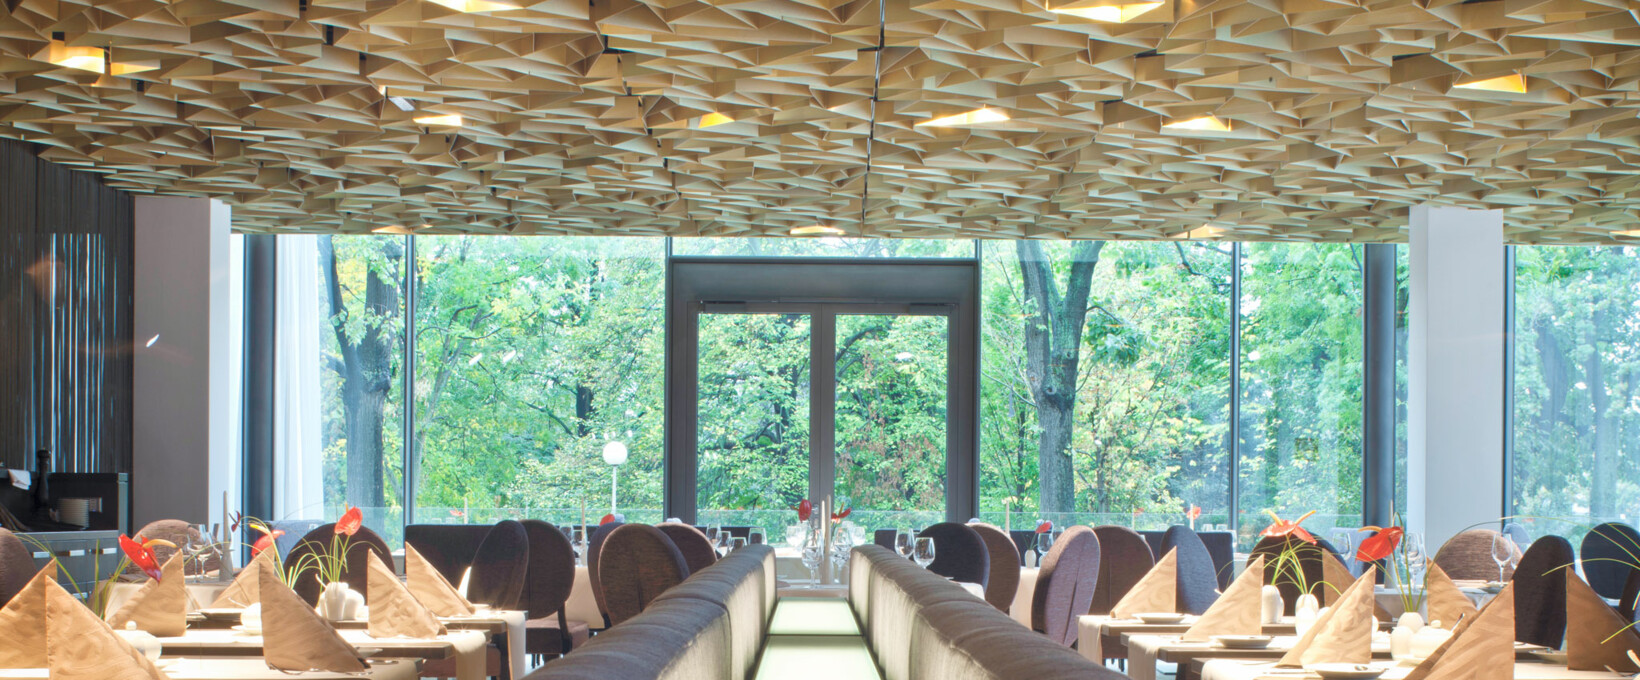 Restaurant Regio mit gedeckten Tischen | Radisson Blu Park Royal Palace Hotel in Wien